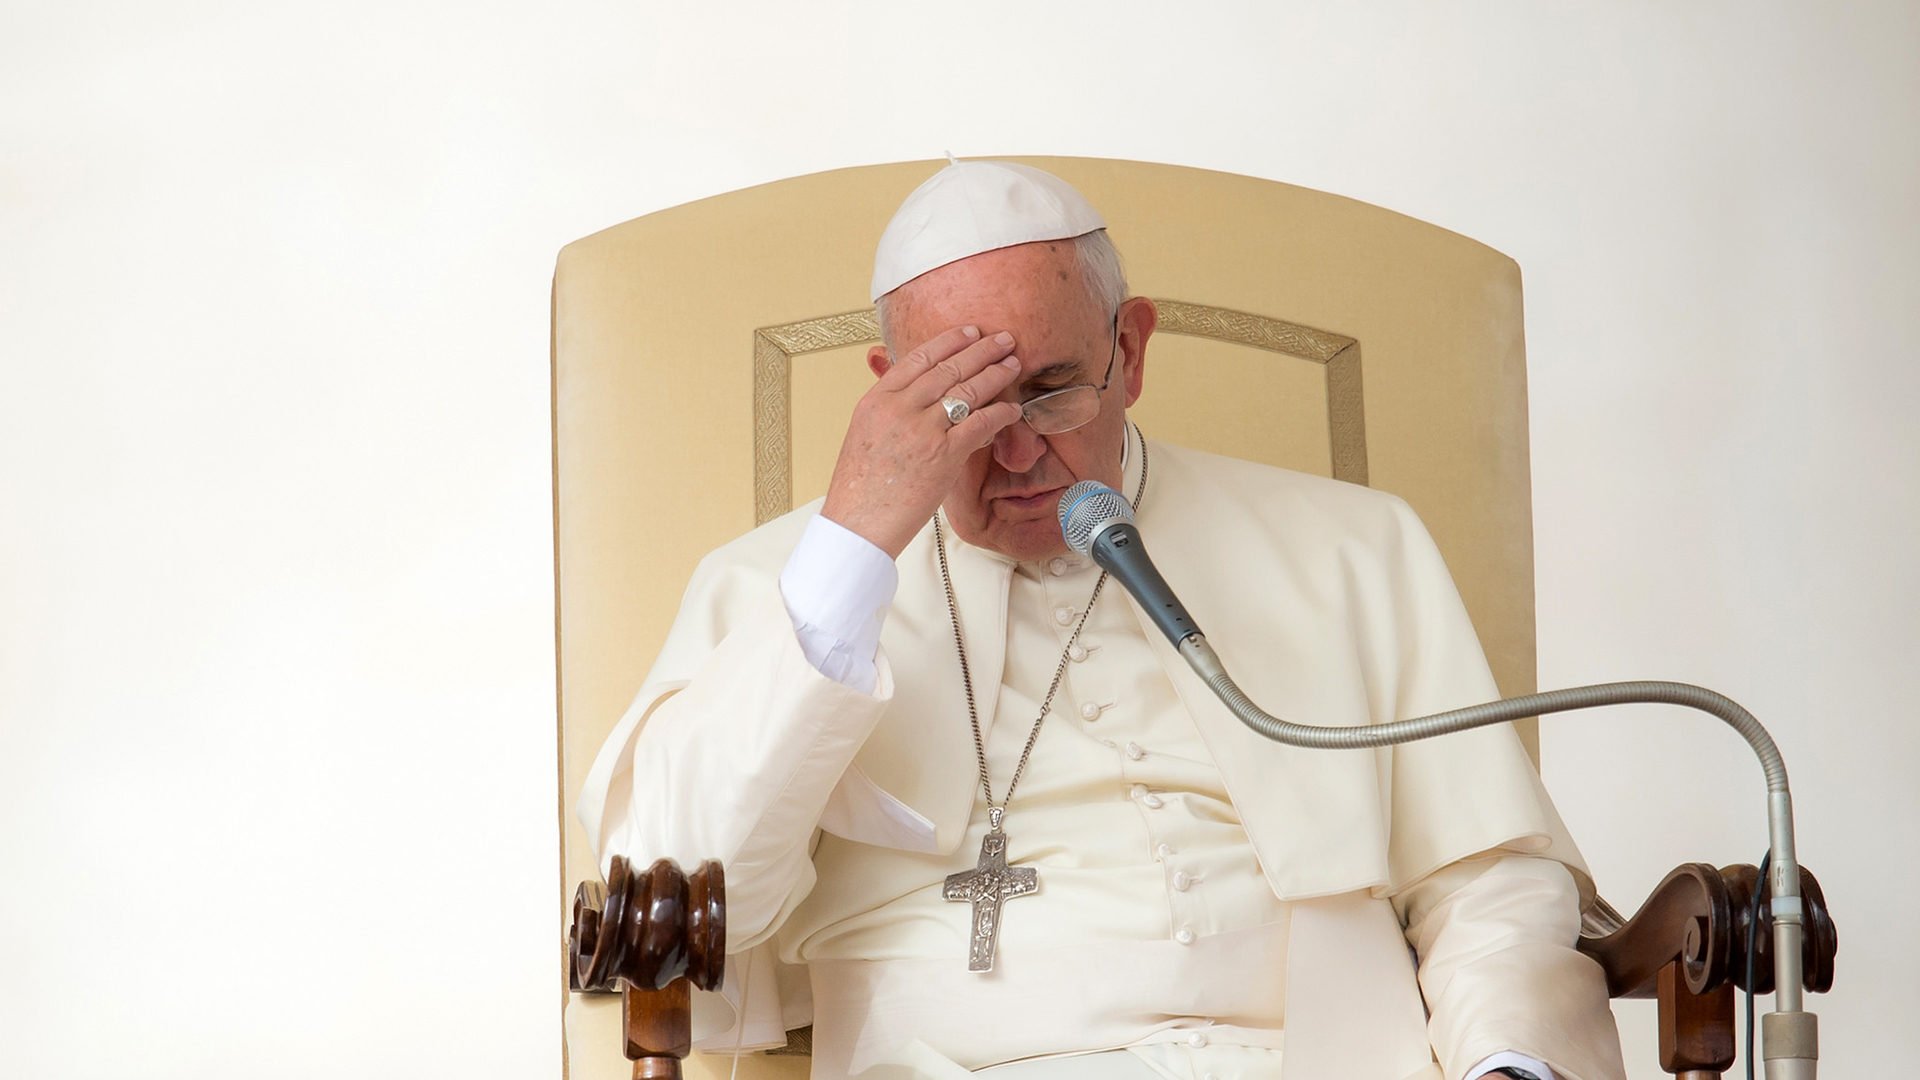 Comment un prêtre, ordonné au service du Christ et de son Église, peut-il en arriver à causer autant de malheur? Telle est la question que pose le pape François. (photo Flickr/Catholic church/CC BY-NC-SA 2.0)